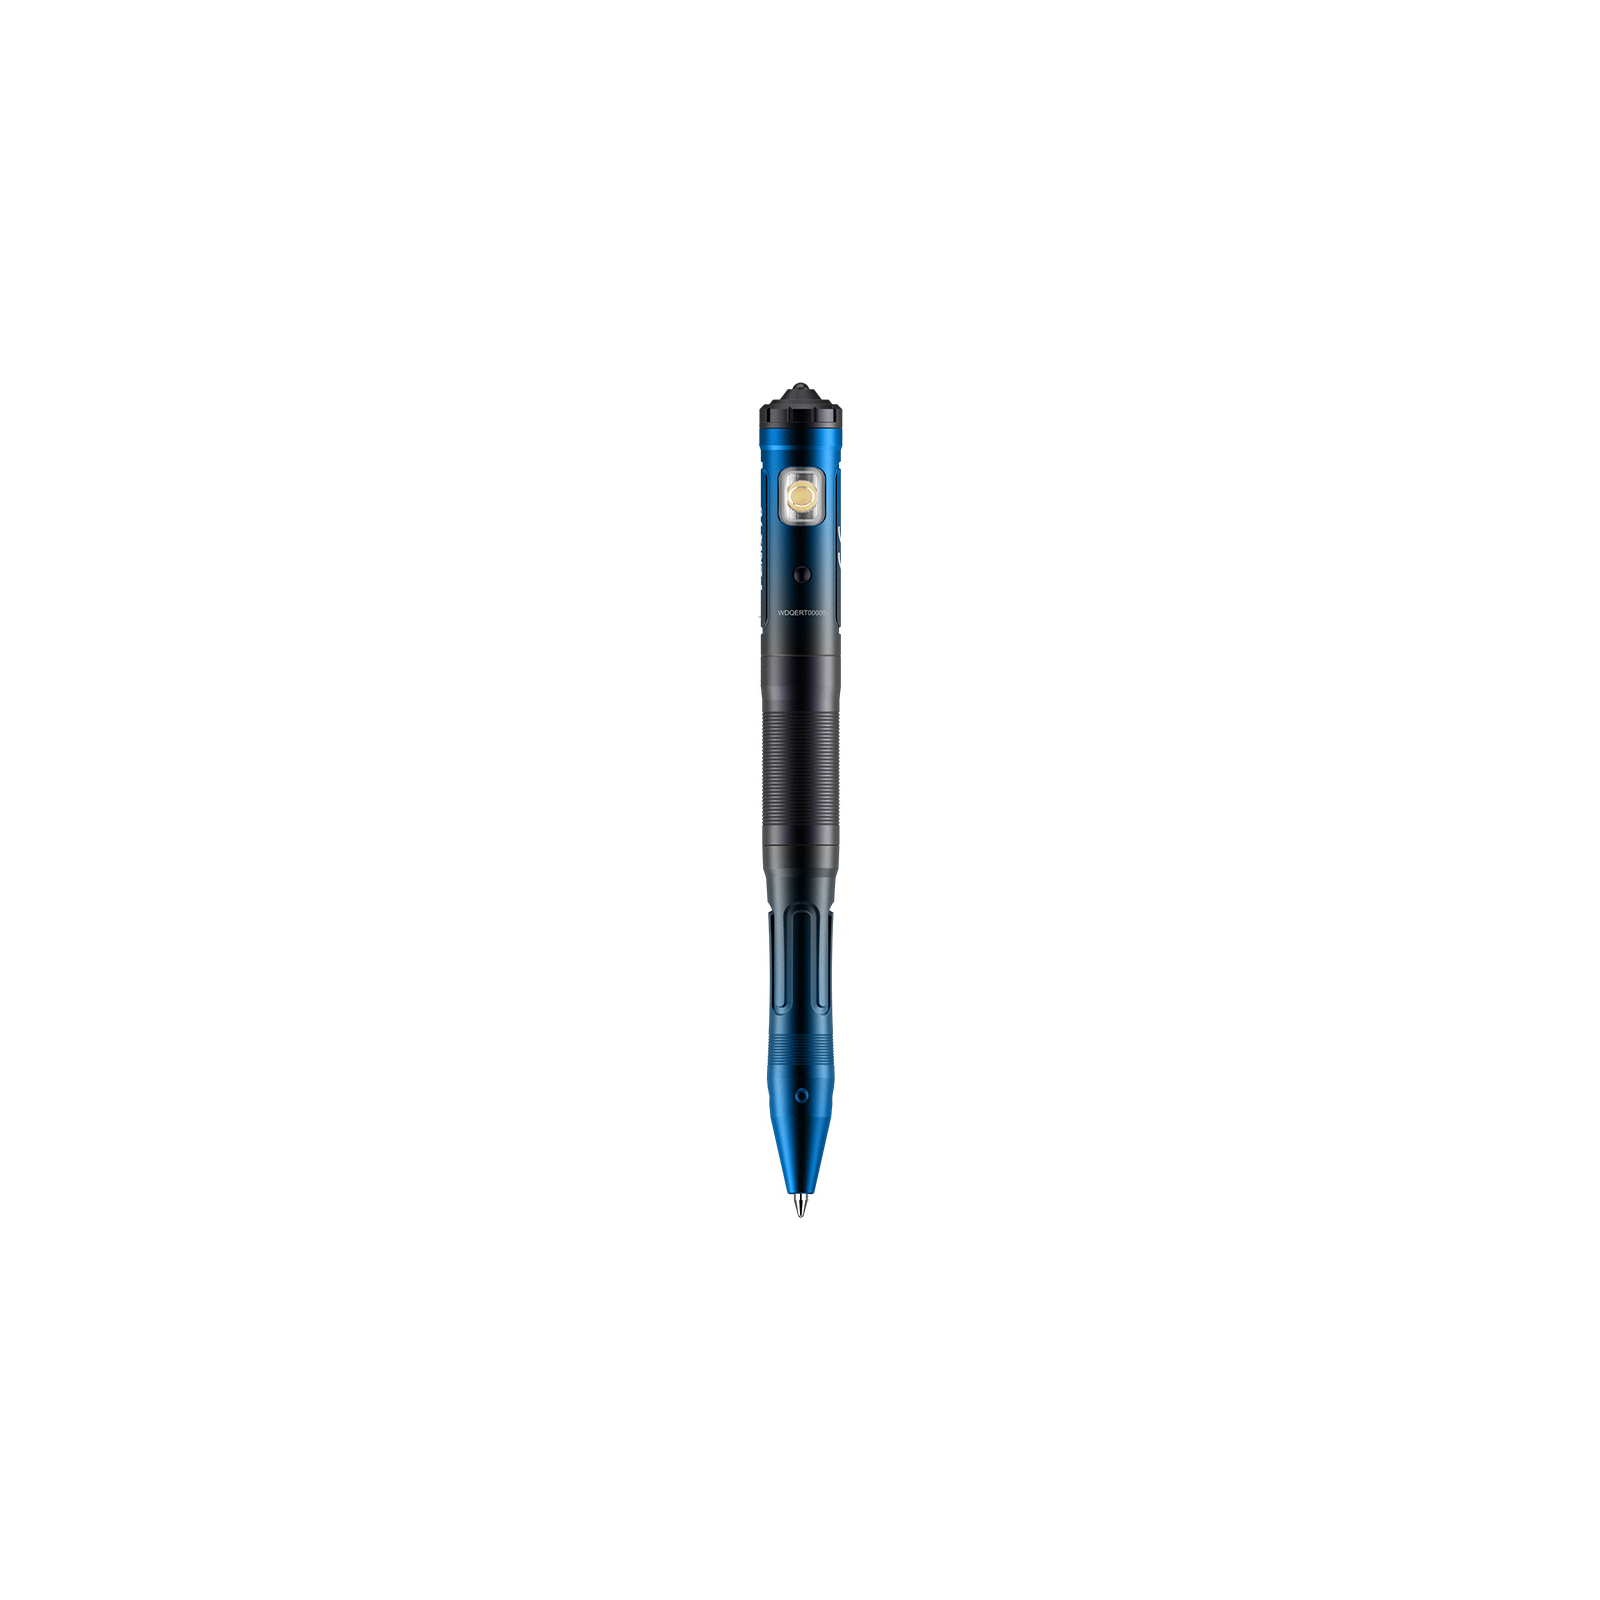 Тактическая ручка Fenix T6 з ліхтариком Blue (T6-Blue)